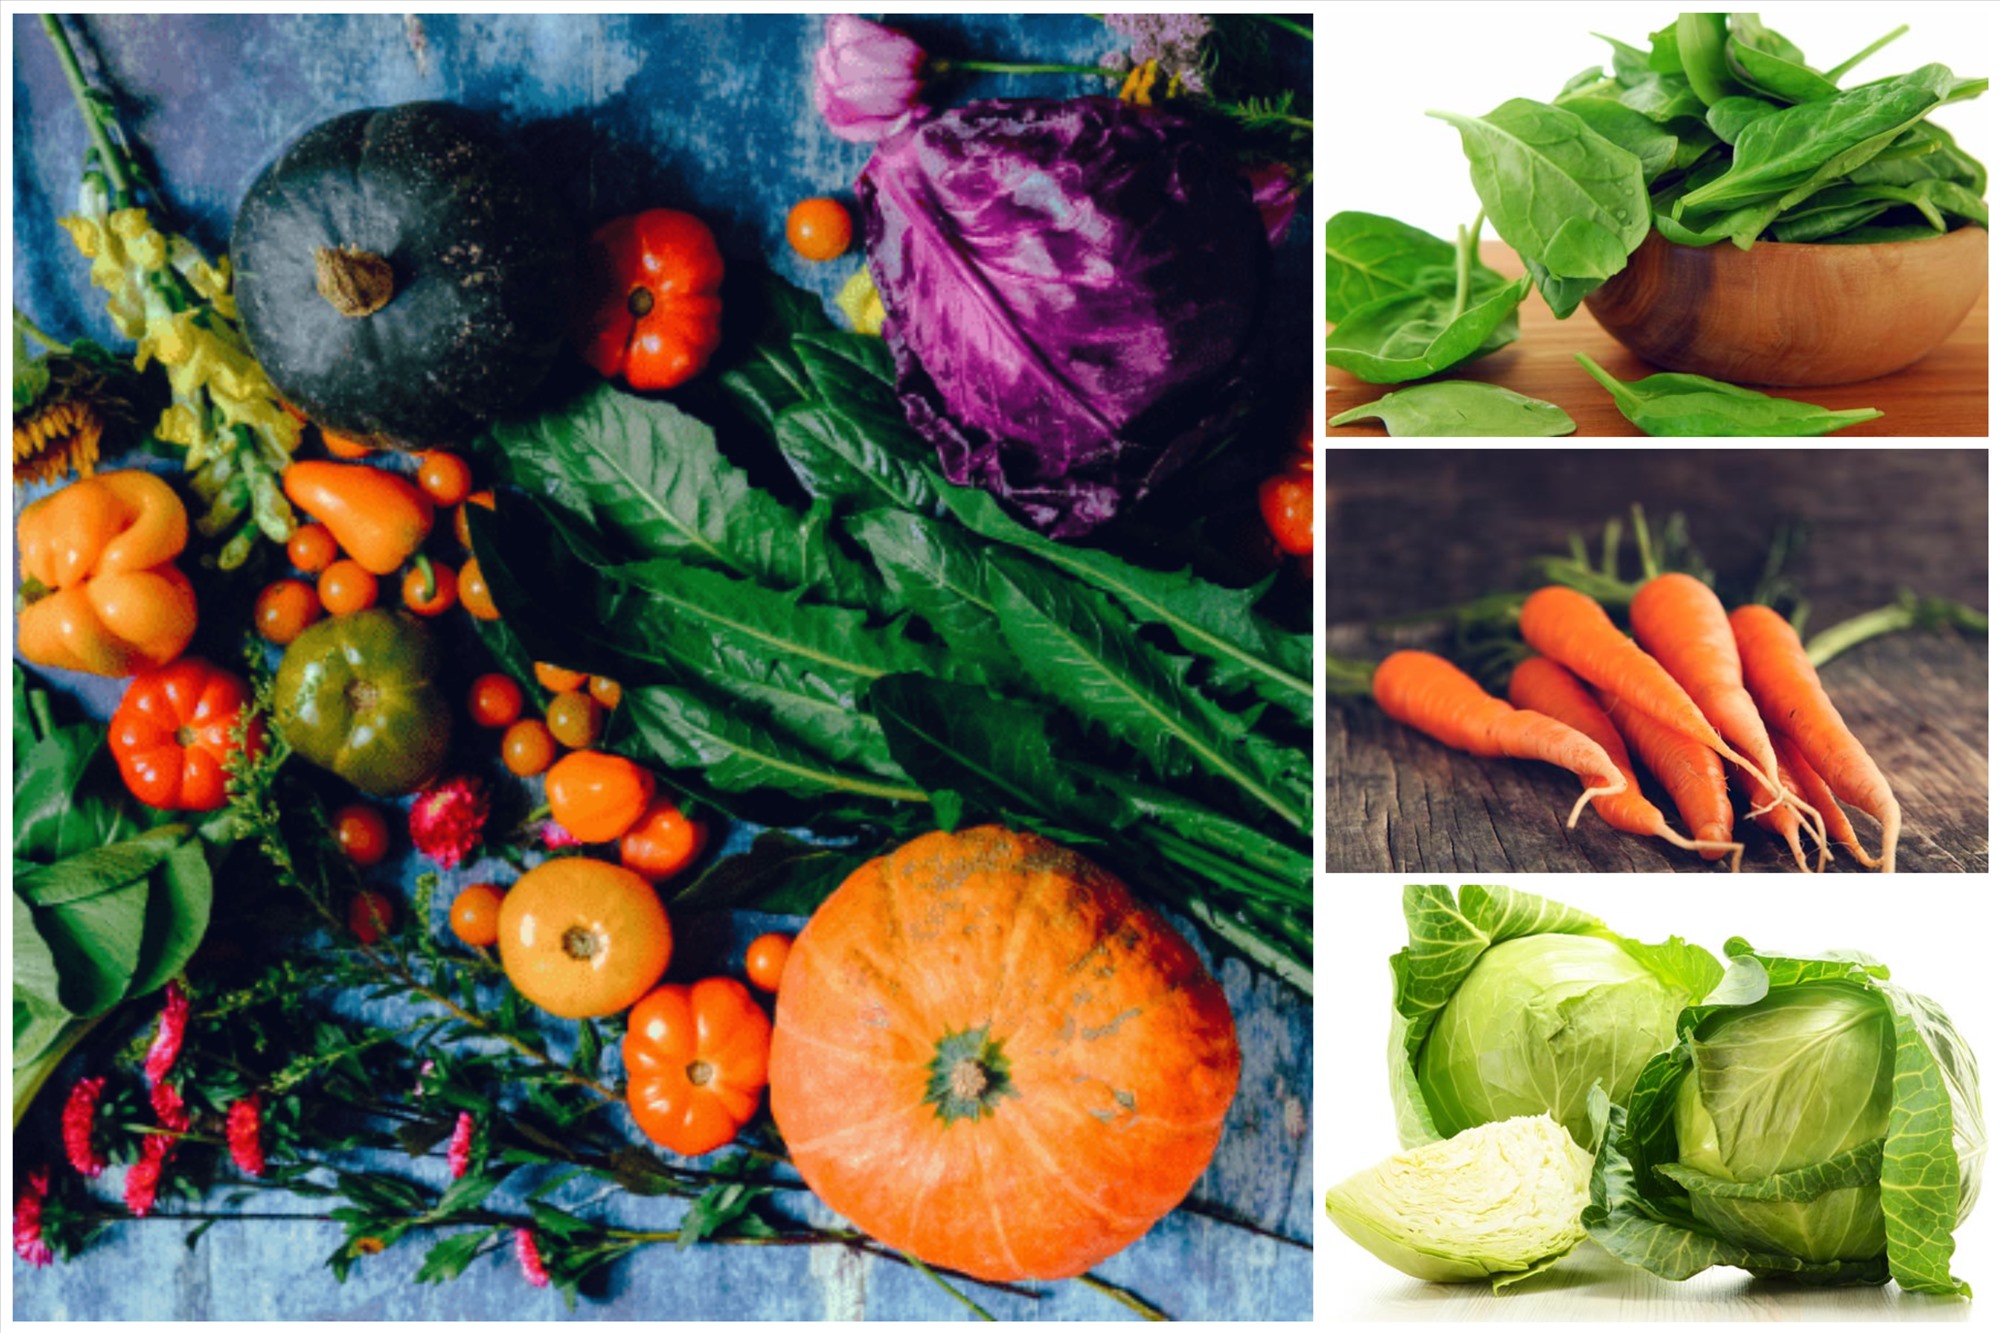 Các loại thực phẩm như: Rau xanh, rau họ cải, khoai tây,...rất hiệu quả trong việc hỗ trợ giảm cân. Đồ họa: Bảo Thoa.